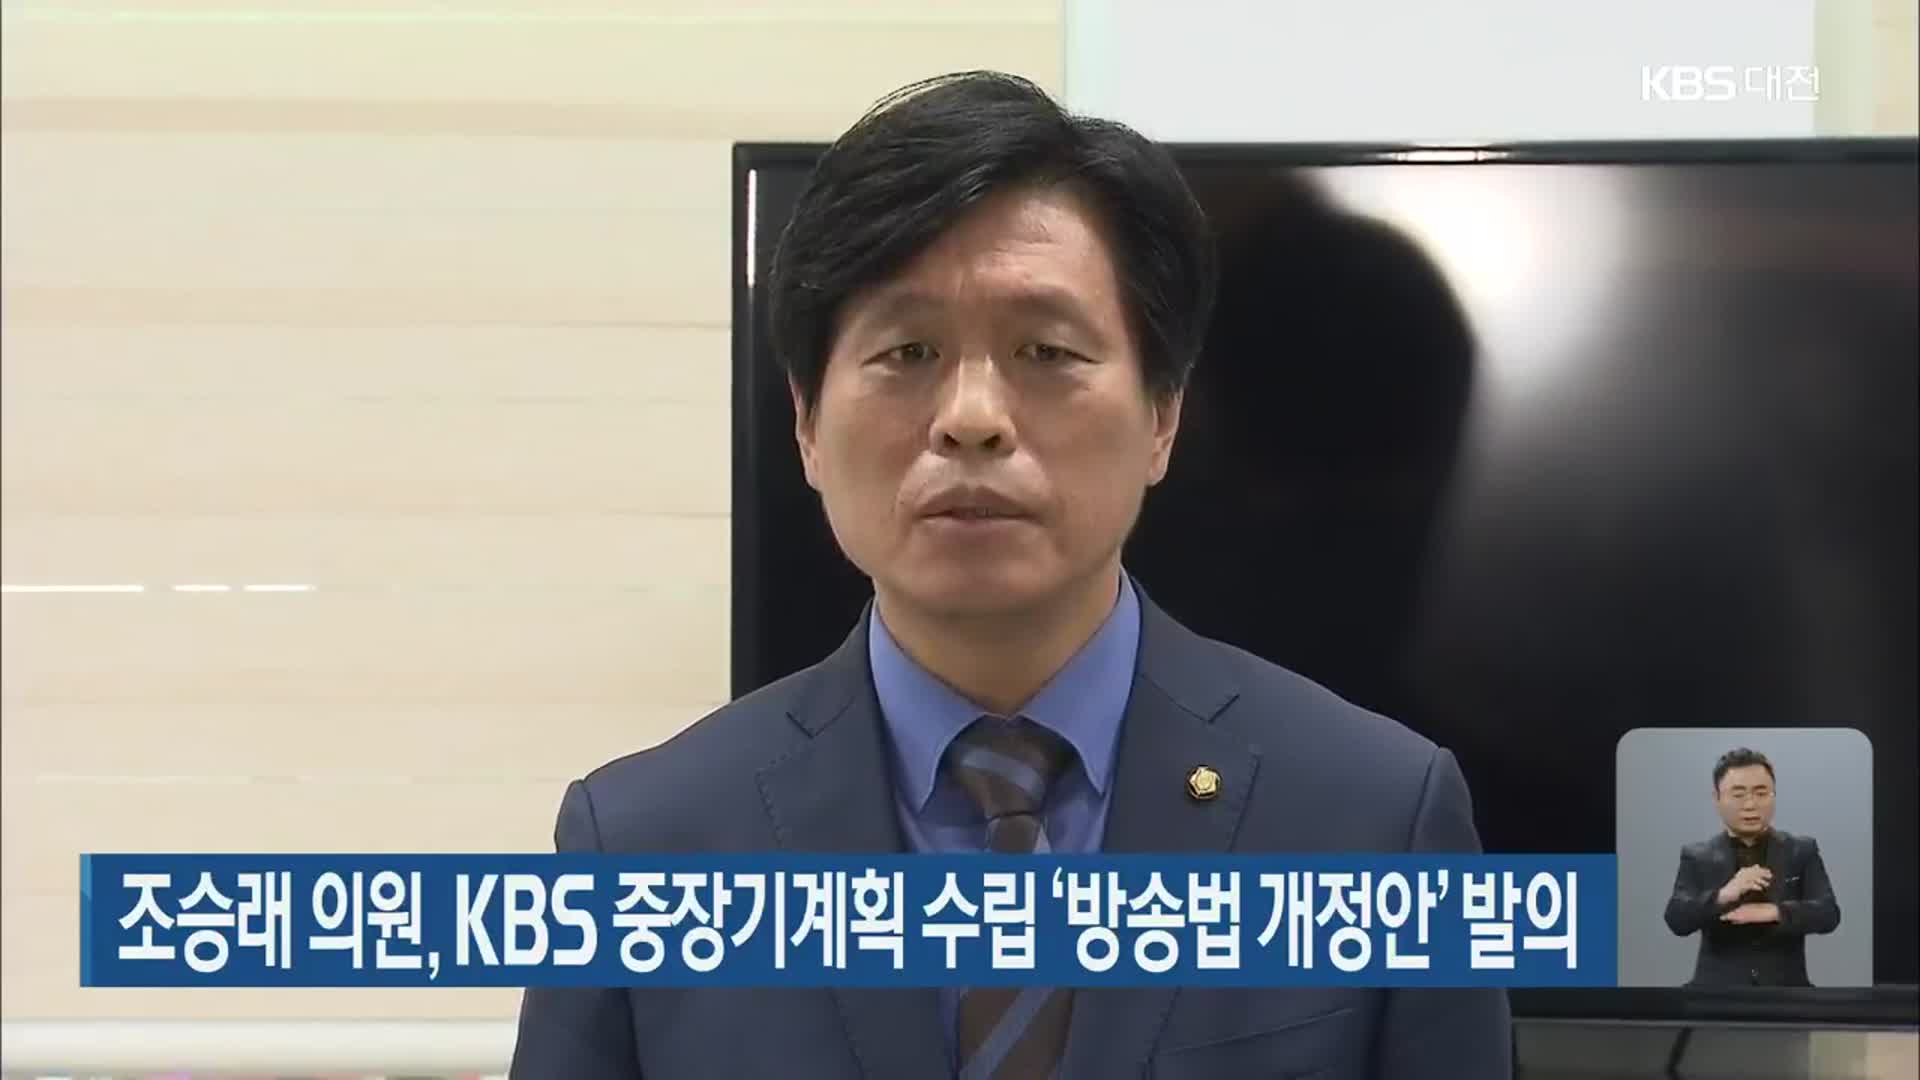 조승래 의원, KBS 중장기계획 수립 ‘방송법 개정안’ 발의